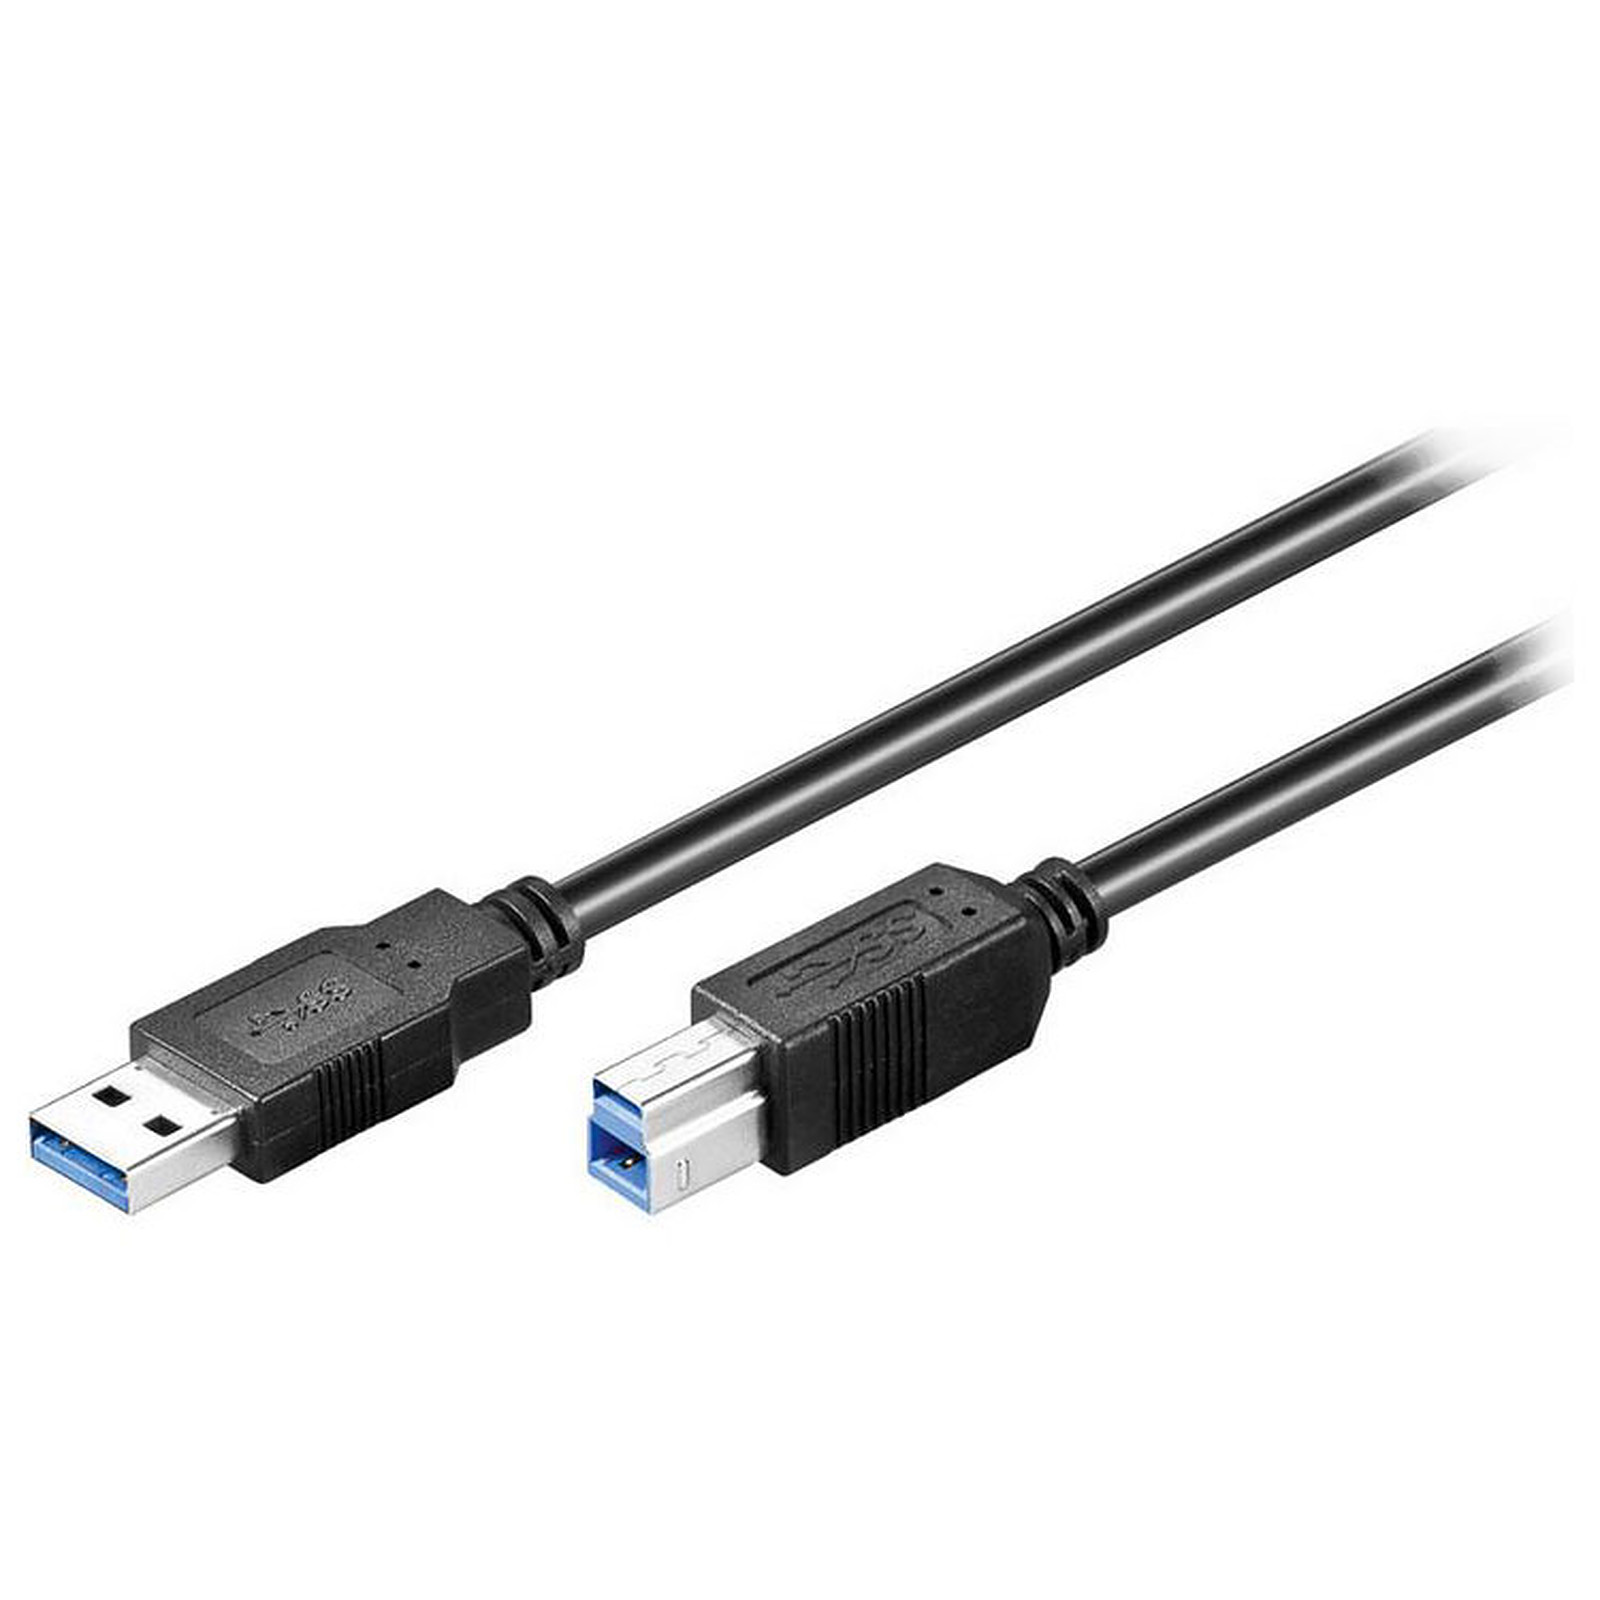 Cable USB 3.0 Type AB (Male/Male) - 5 m - USB Generique